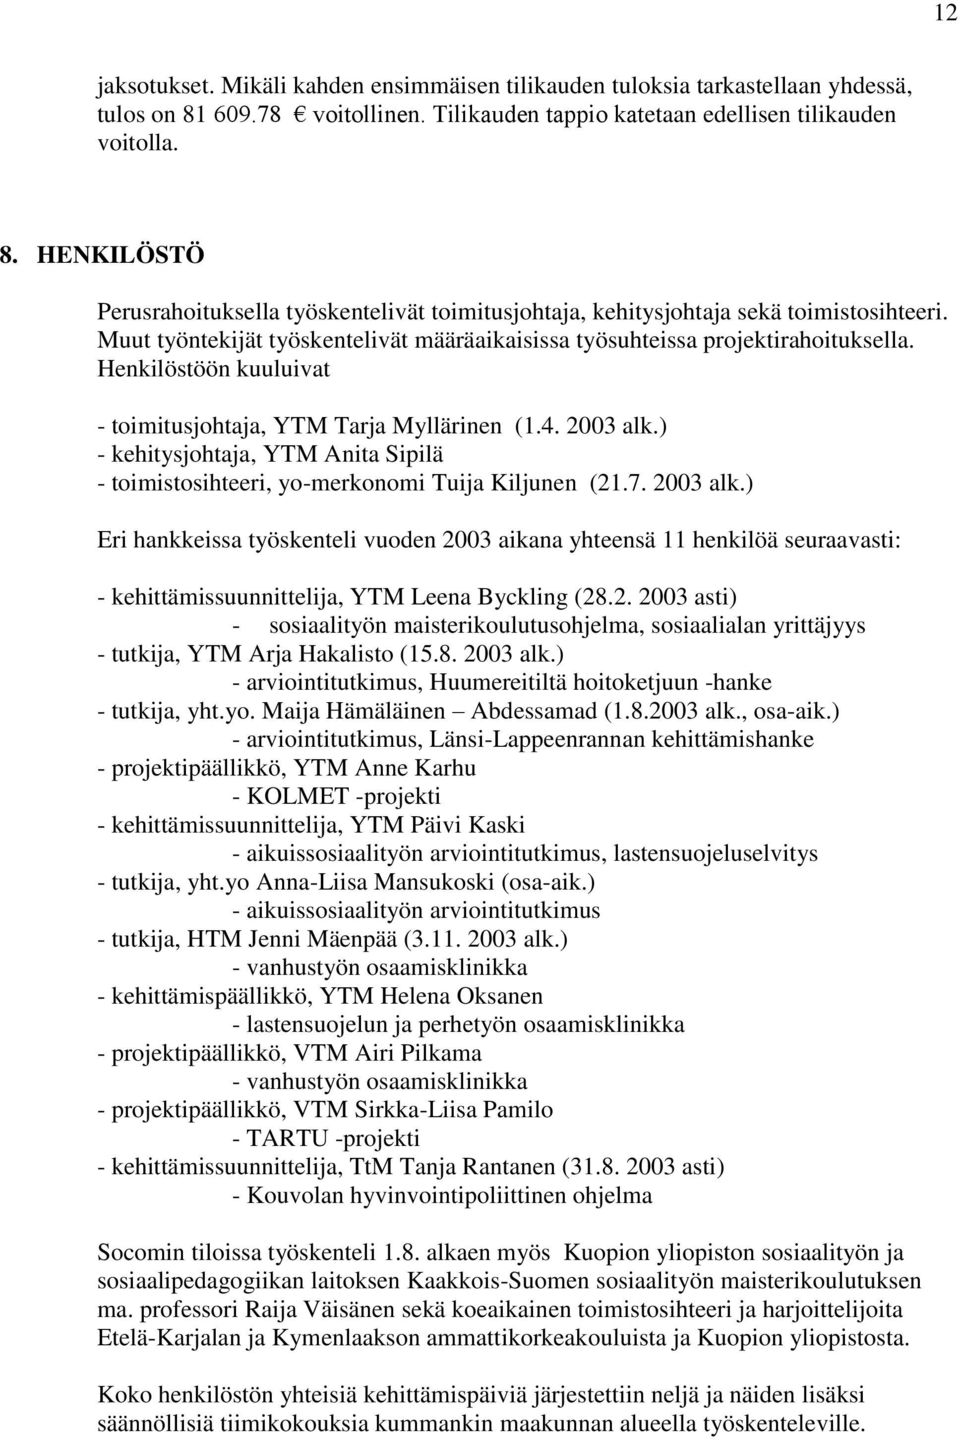 ) - kehitysjohtaja, YTM Anita Sipilä - toimistosihteeri, yo-merkonomi Tuija Kiljunen (21.7. 2003 alk.